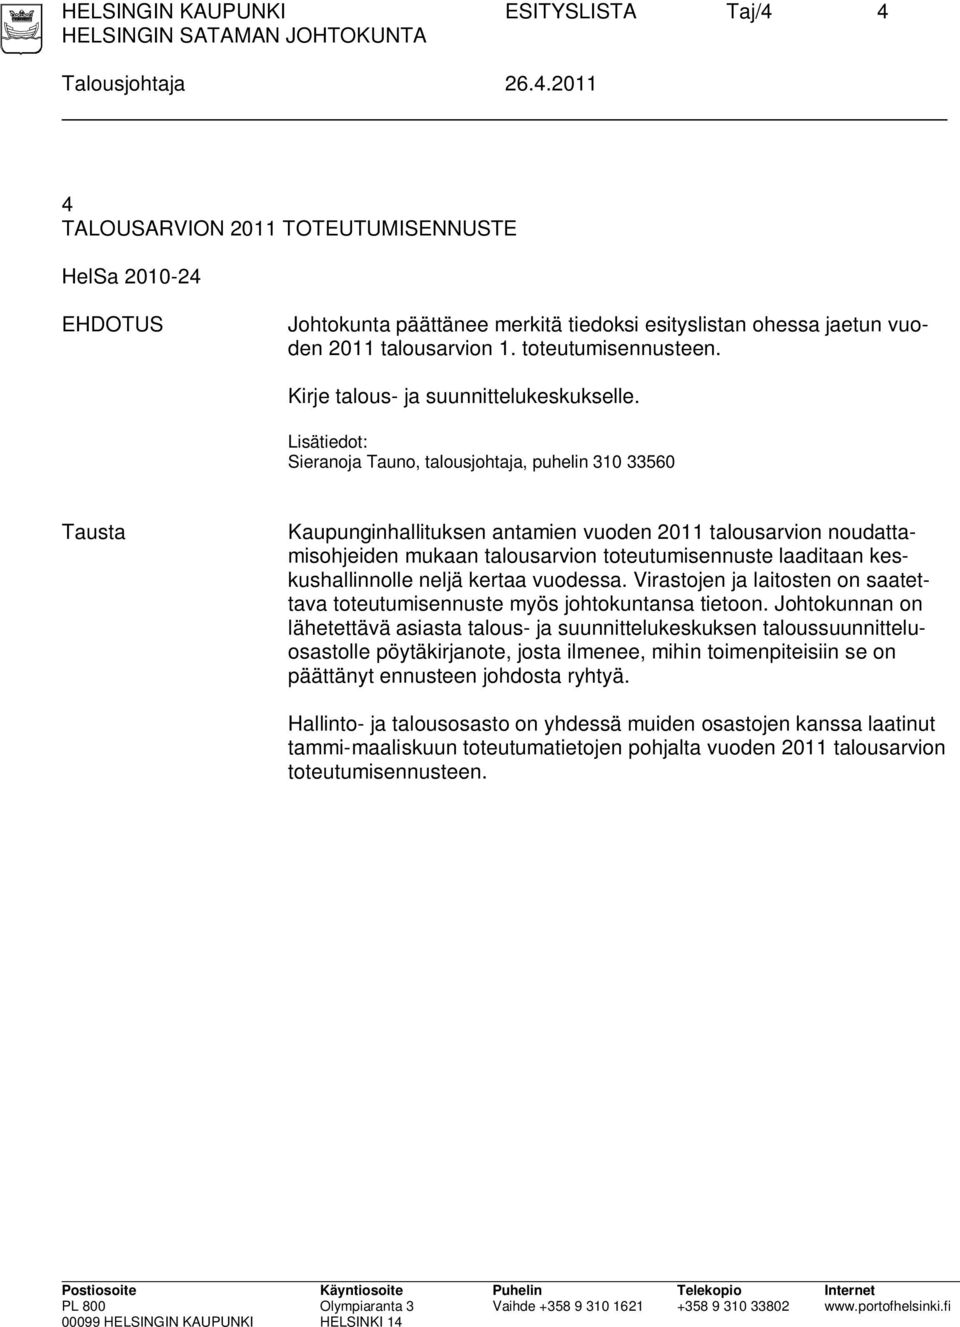 Lisätiedot: Sieranoja Tauno, talousjohtaja, puhelin 310 33560 Tausta Kaupunginhallituksen antamien vuoden 2011 talousarvion noudattamisohjeiden mukaan talousarvion toteutumisennuste laaditaan